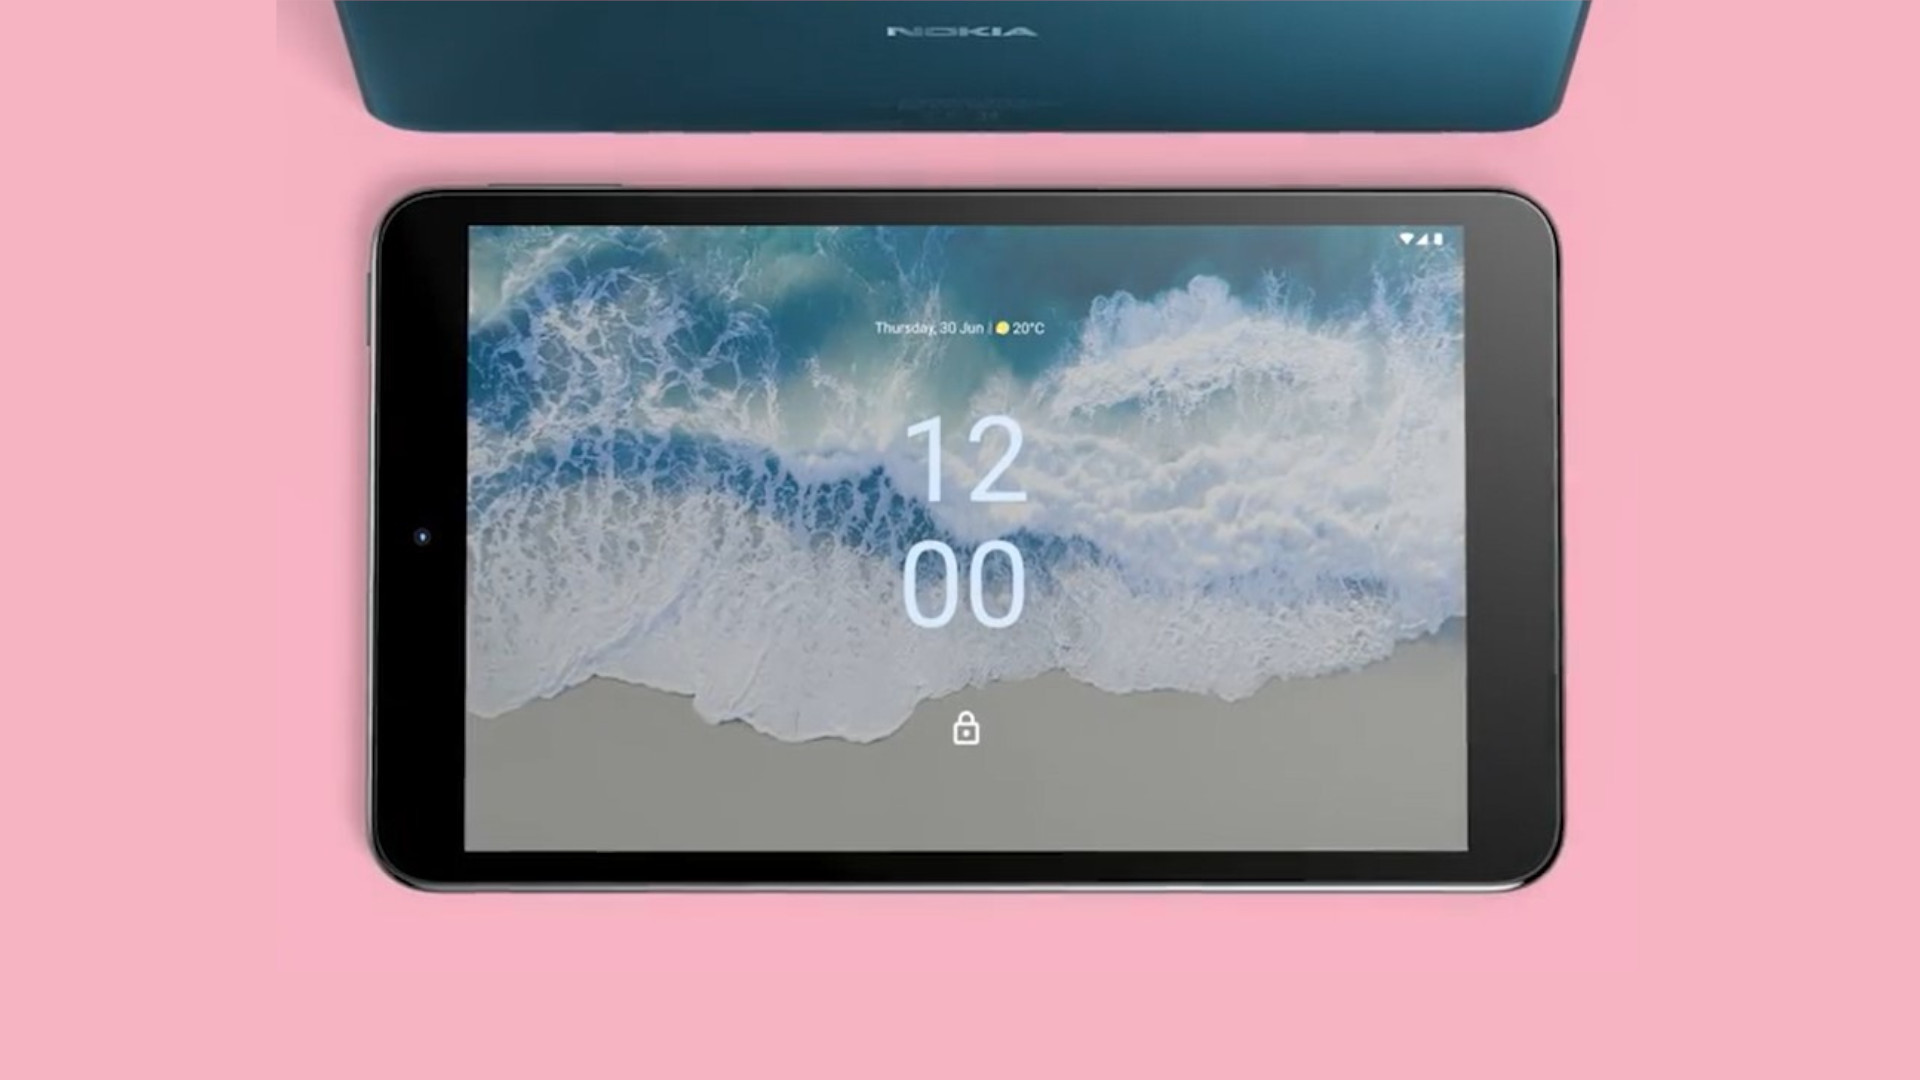 Onko tuleva Nokia-tabletti haastamassa Apple iPad minin? HMD Globalin  pienempi tabletti saatettiin nähdä nyt ensimmäistä kertaa